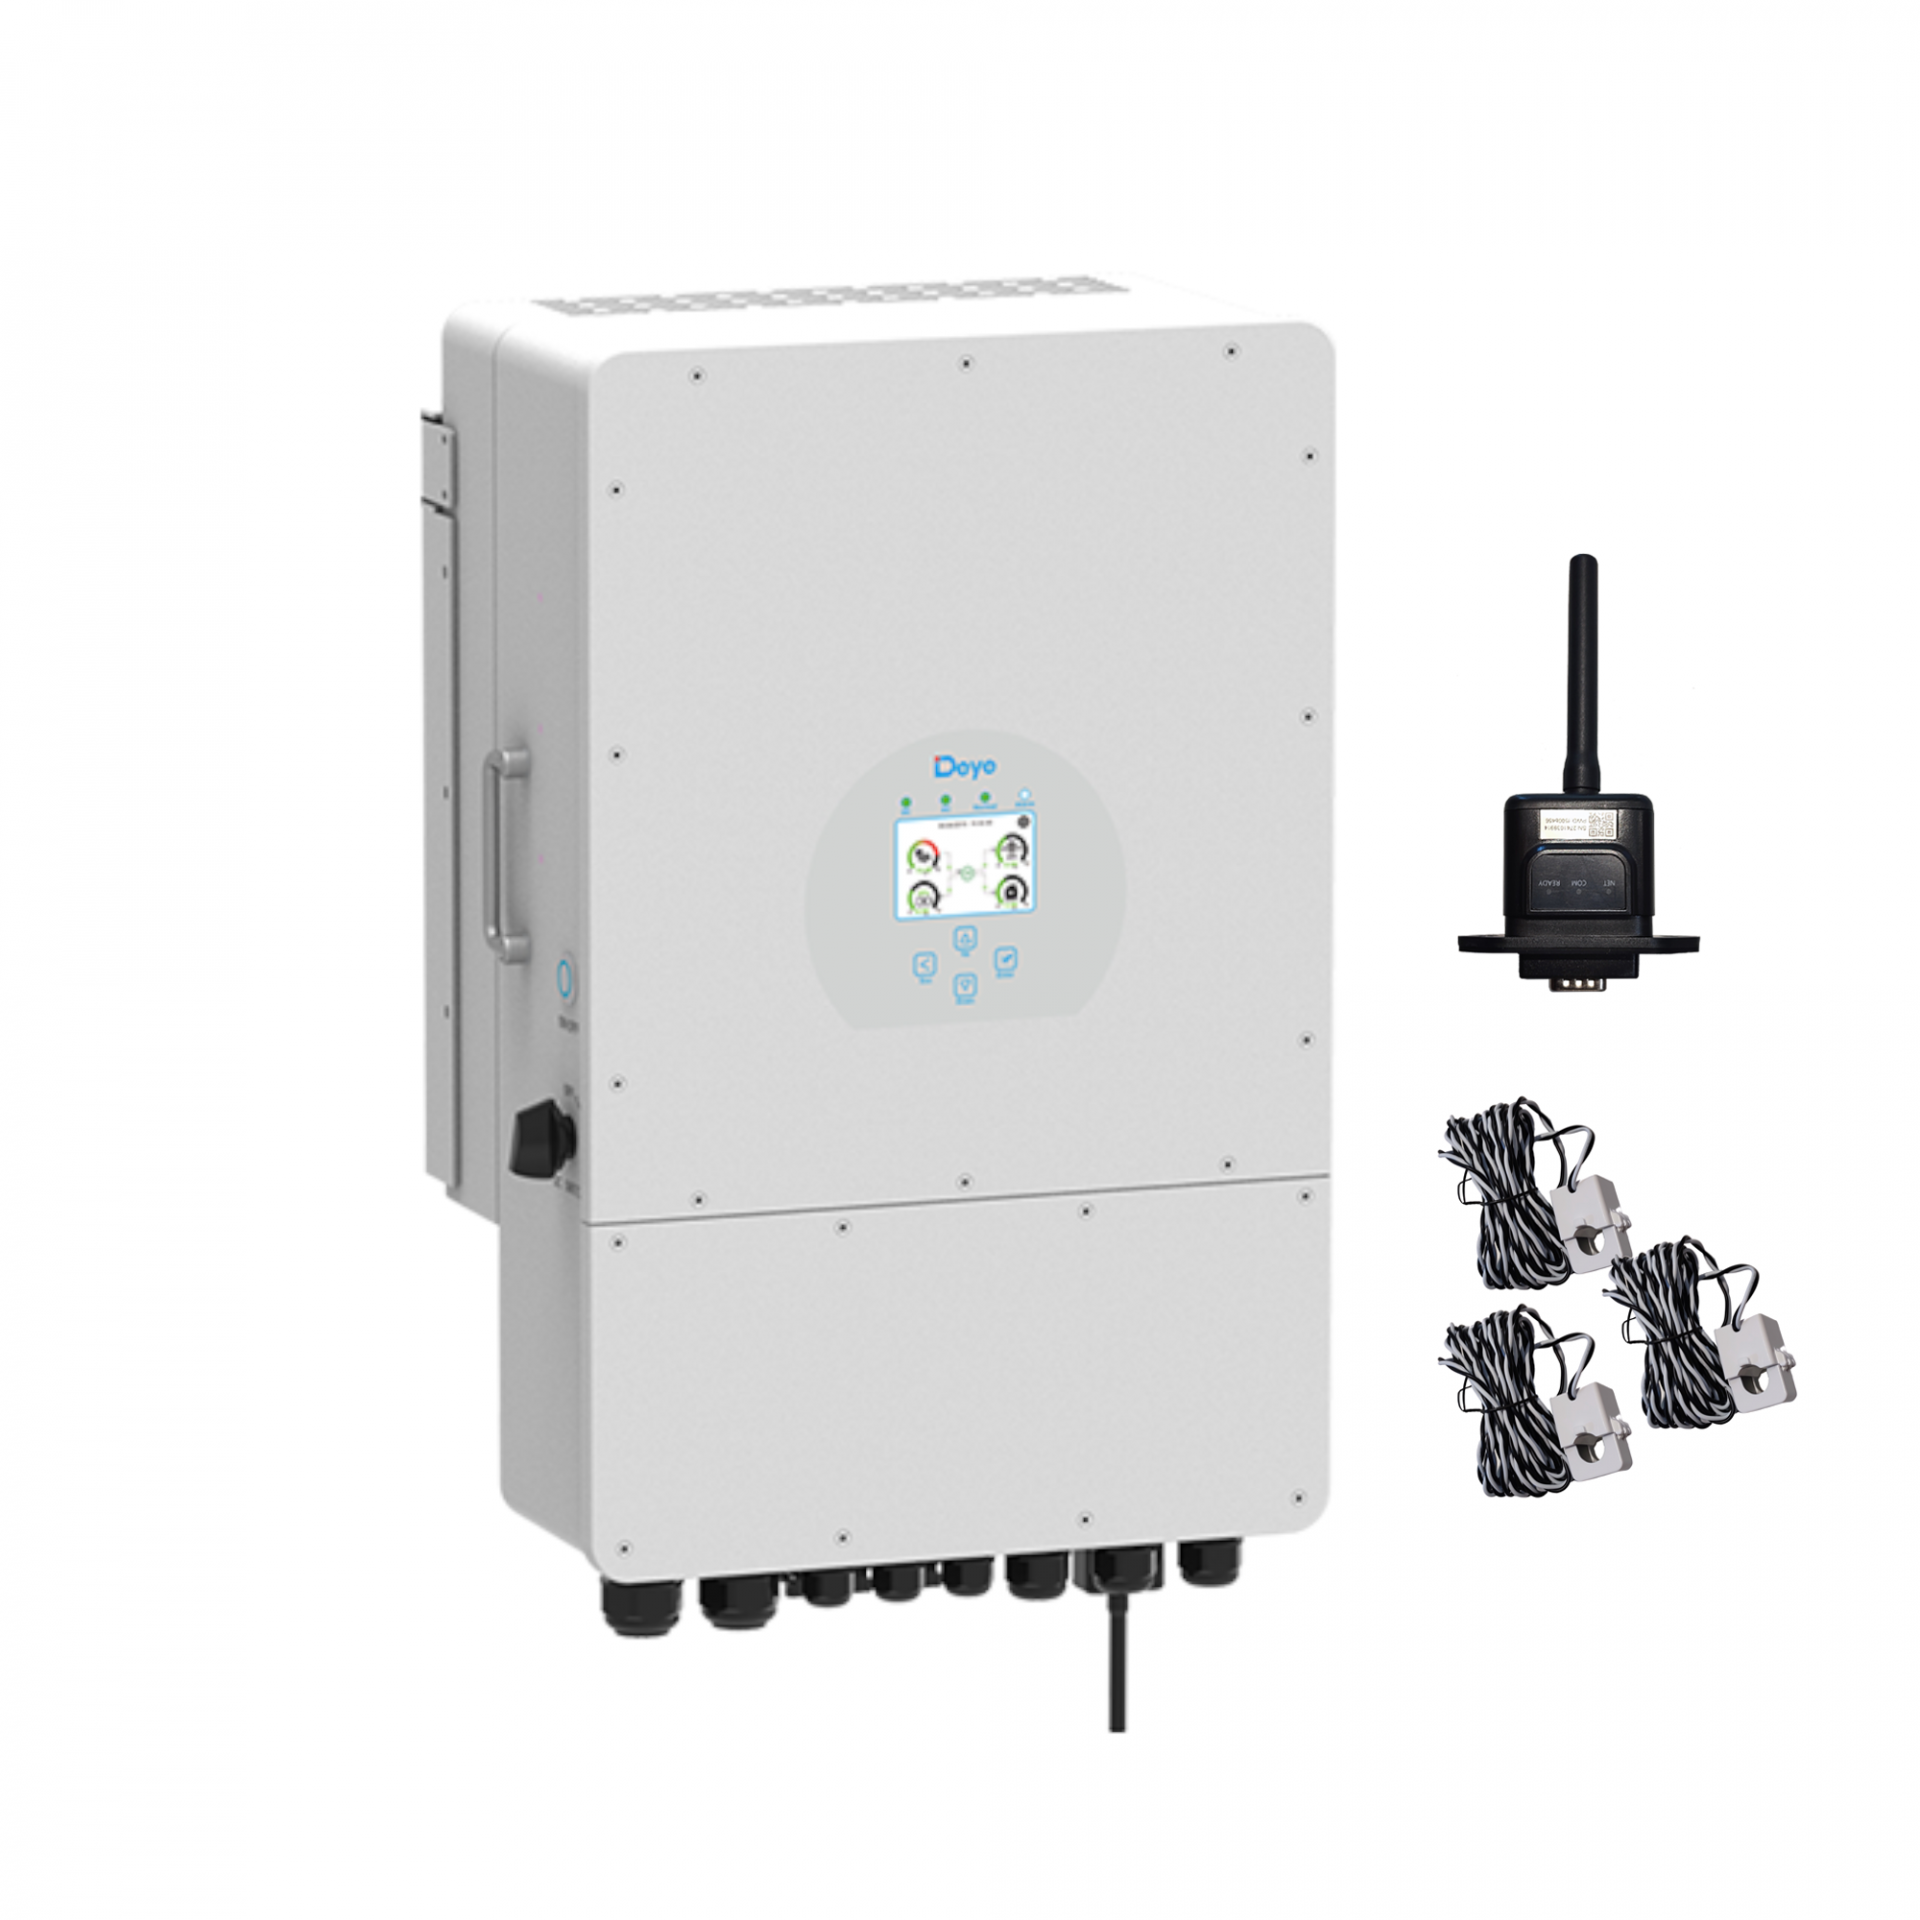  Dreiphasen Hybrid-Wechselrichter Deye SUN-12K-SG04LP3-EU (7800Wp PV-Leistung)